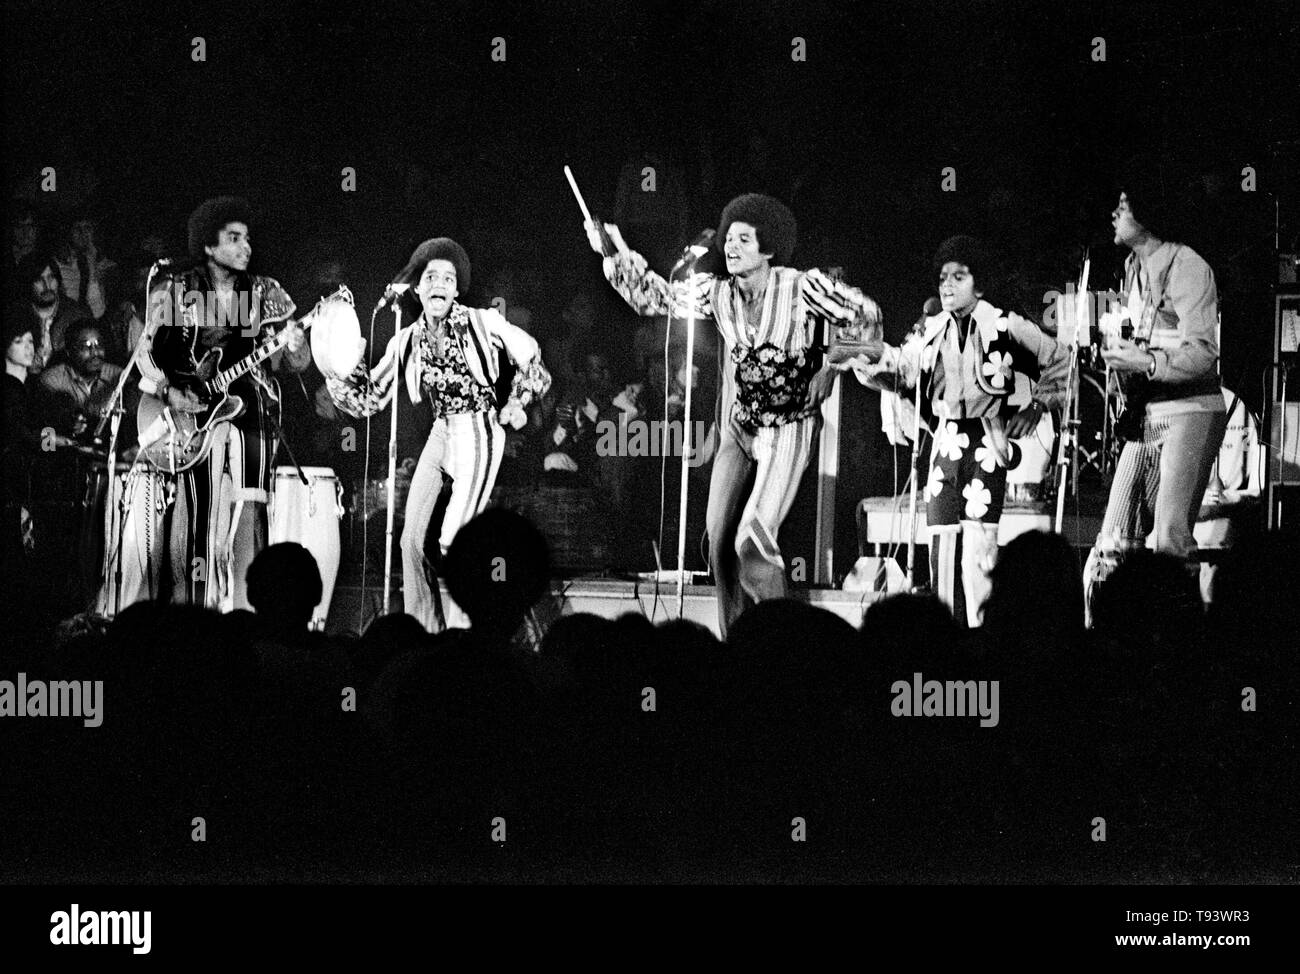 concertgebouw, jackson five, michael jackson Amsterdam, Netherlands - 1972,  (Photo Gijsbert Hanekroot) *** Local Caption *** jackson five, michael jackson michael jackson jackson five Stock Photo